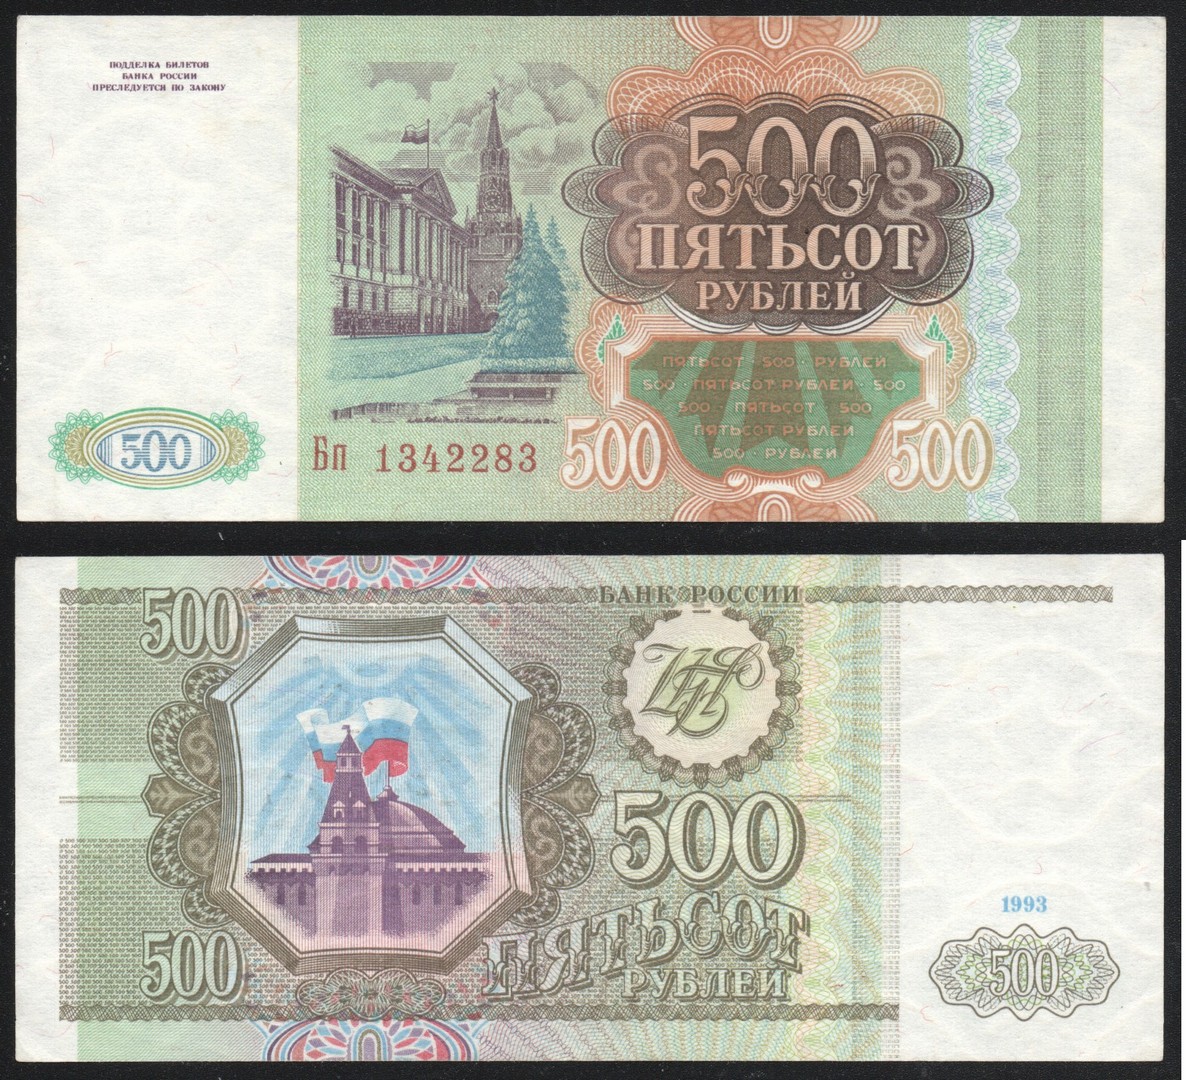 500 российских рублей. 500 Рублей 1993. 500 Рублей 1993 года. Купюры СССР 1993 года. Тысяча рублей 1993 бумажная.